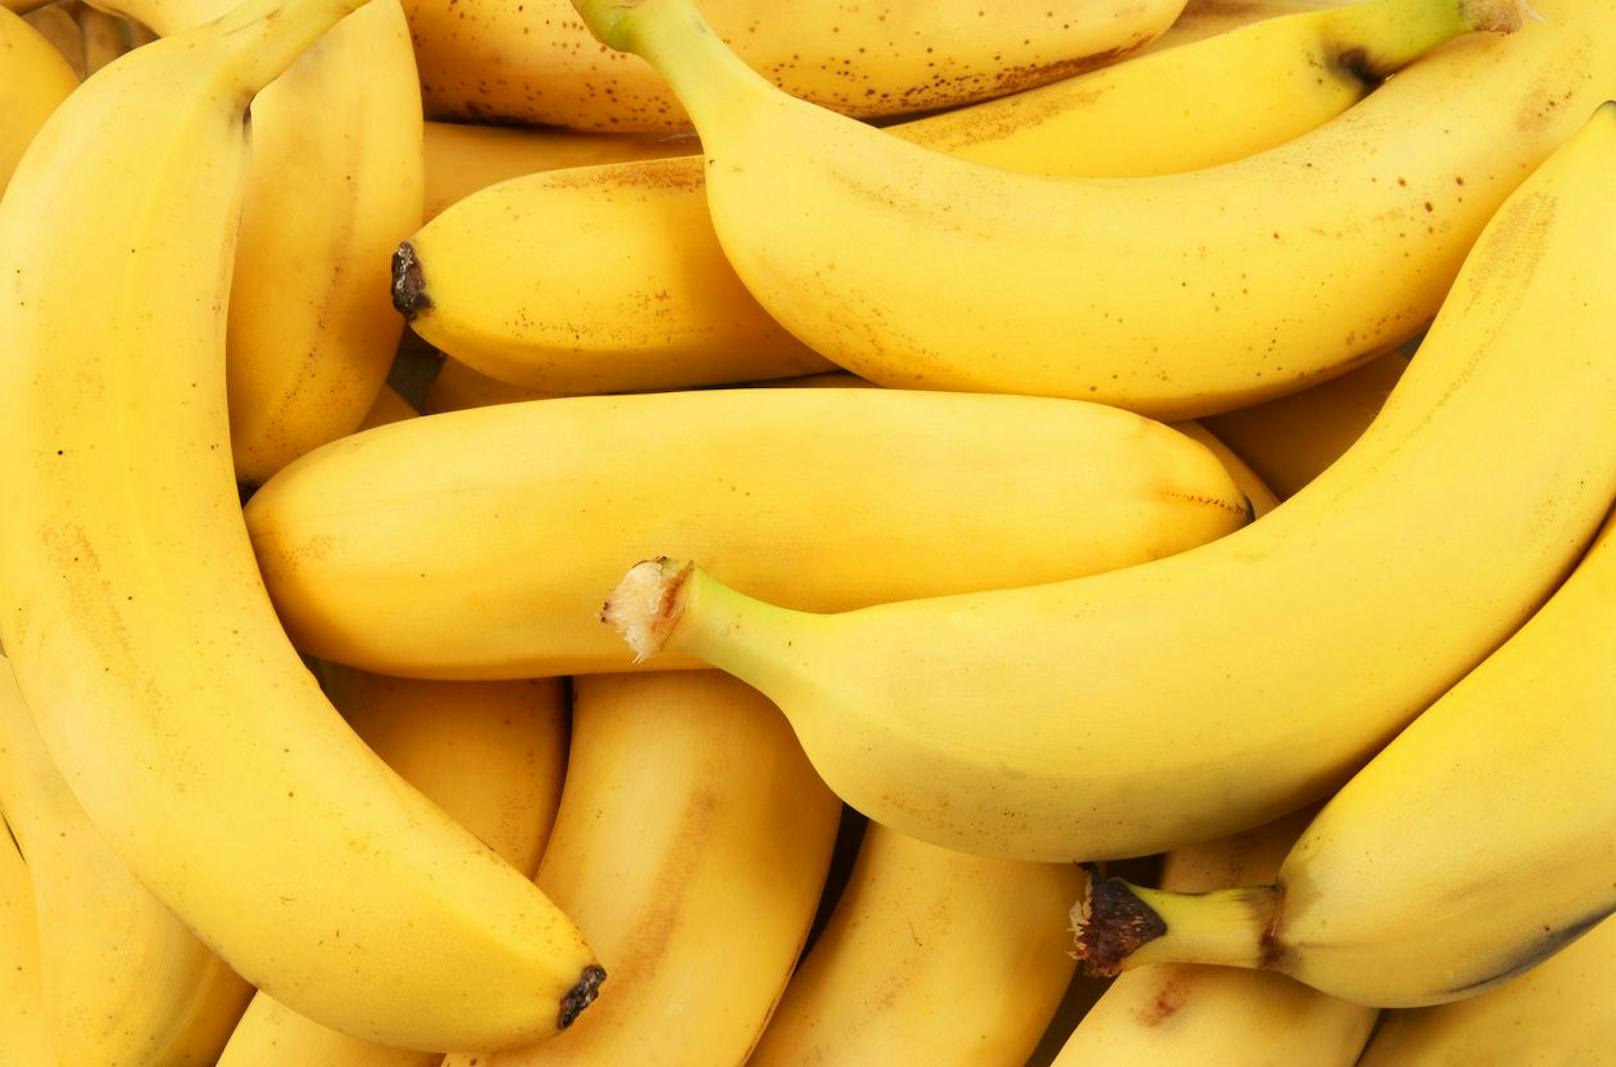 Aufgrund ihrer natürlichen Süße ist die<strong> Banane </strong>sogar bei Kindern beliebt. Diese Süße resultiert aus einem sehr hohen Anteil aus Fruchtzucker. Je nach Reifegrad besteht eine handelsübliche Banane zu 12-17 Prozent aus Fruchtzucker. In einer mittelgroßen Frucht sind das 25 Gramm. Das entspricht bereits der Hälfte der maximal empfohlenen Zucker-Tagesdosis. Da Zucker ein Energielieferant ist, eignet sich die Banane gut für Sportler. Weiterer Pluspunkt: Ein hoher Magnesium- und Kaliumgehalt sowie Vitamine und Mineralstoffe.